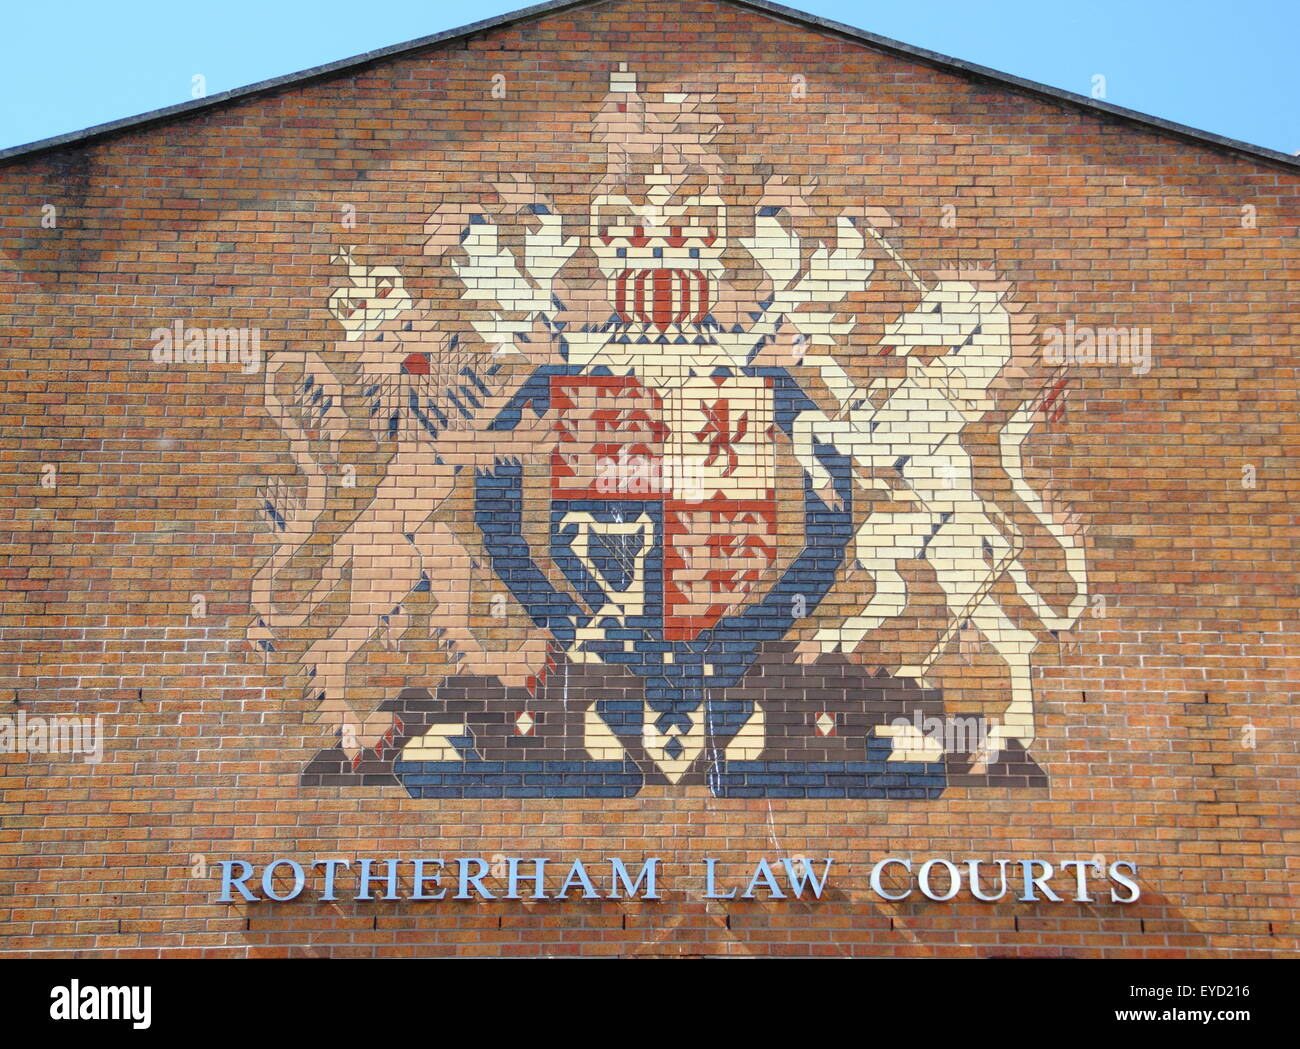 Vue extérieure du palais de justice de Rotherham, Rotherham, South Yorkshire, Angleterre, Royaume-Uni Banque D'Images